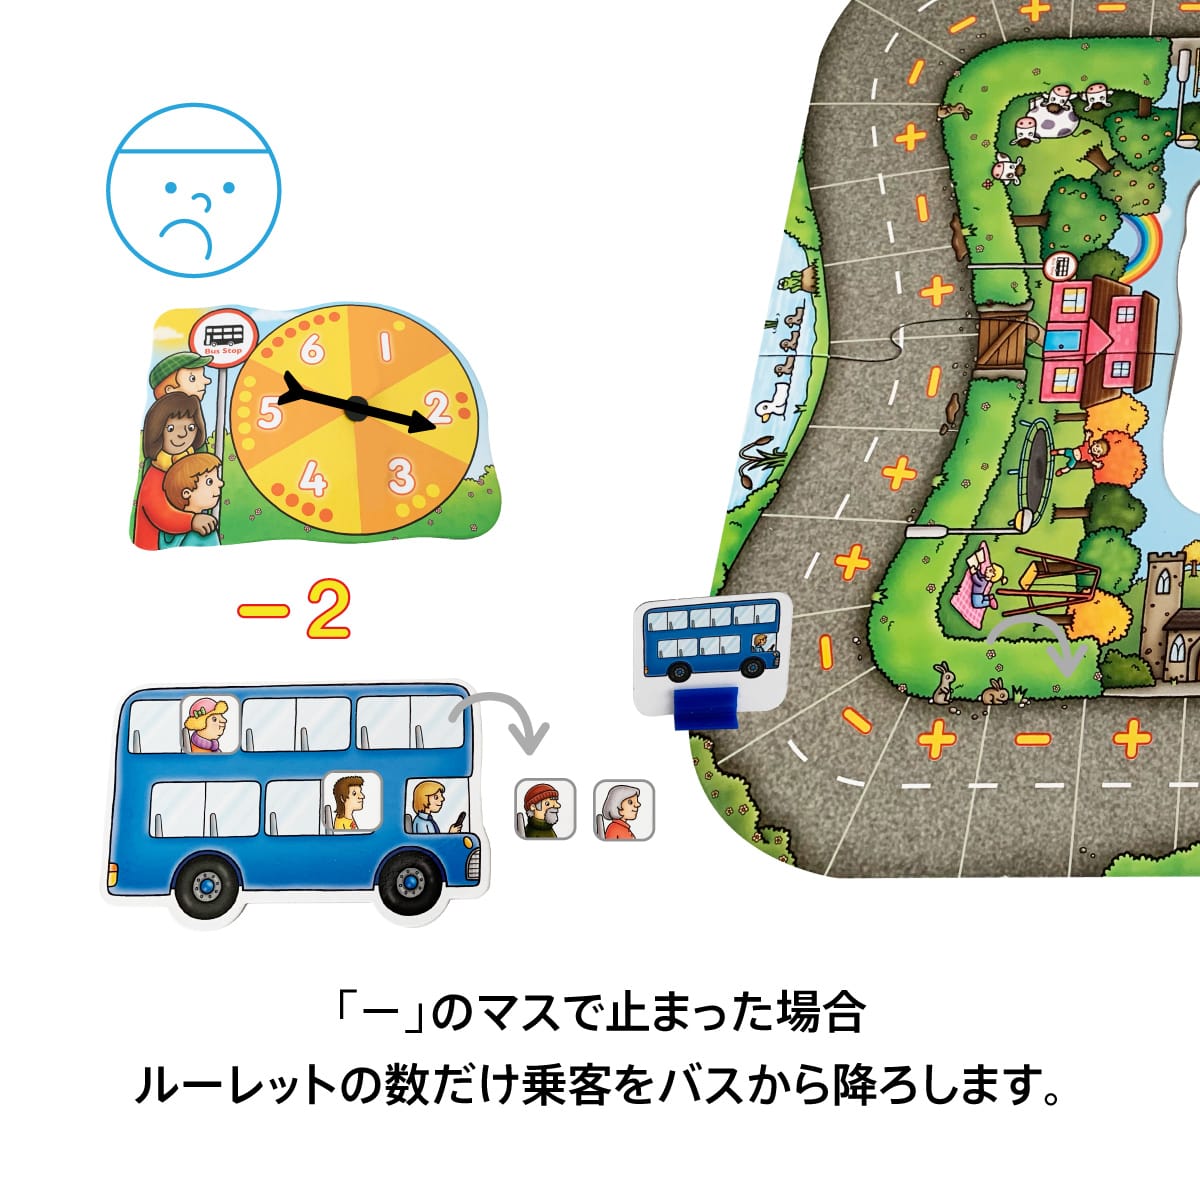 バス・ストップゲーム: ボーネルンド オンラインショップ。世界中の知育玩具など、あそび道具がたくさん。0歳からのお子様へのプレゼントにも。